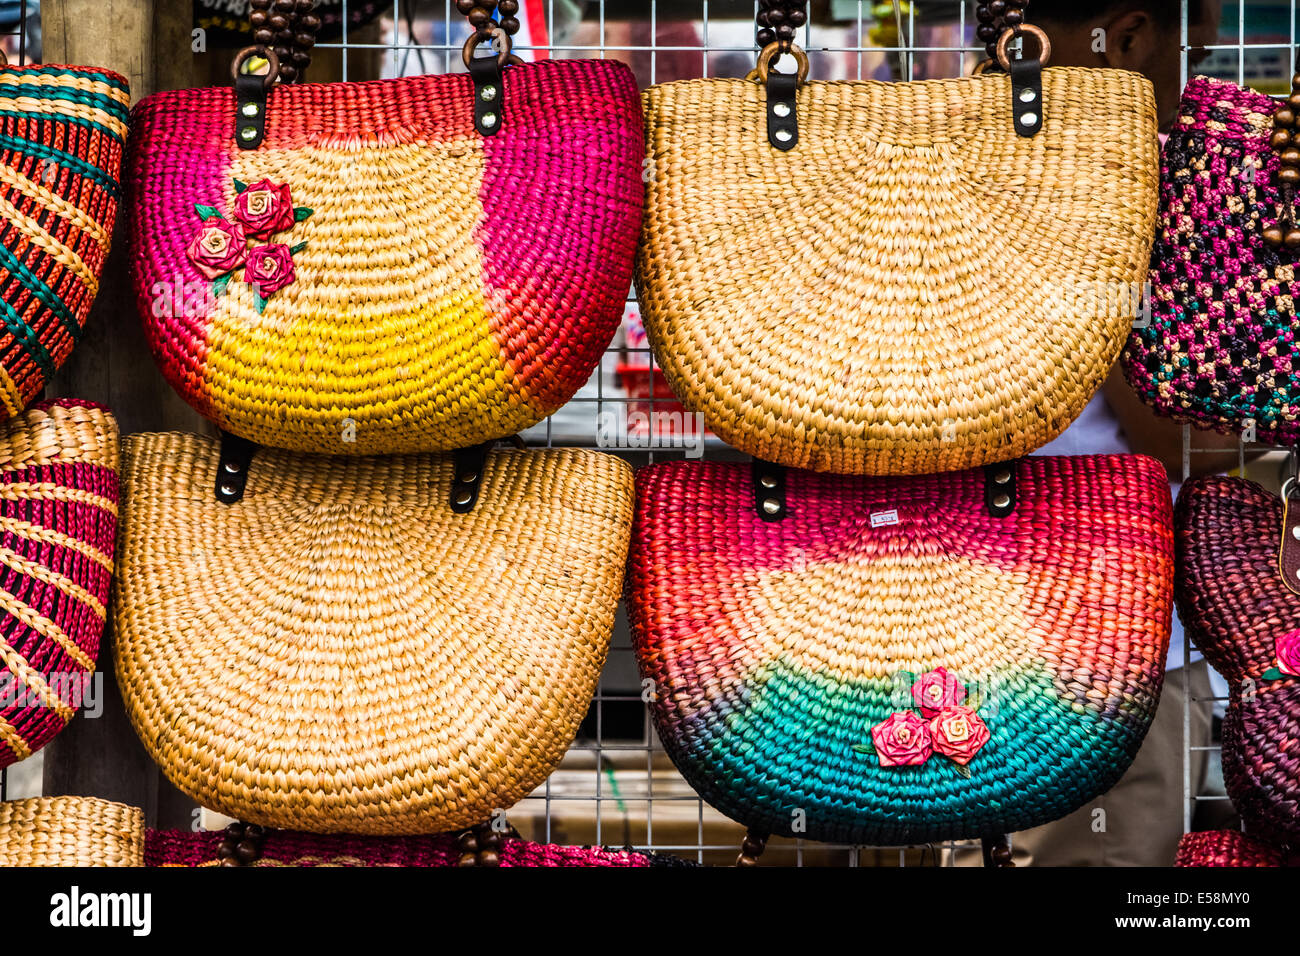 Farbenfrohe handgefertigte Taschen in einem thailändischen Markt. Stockfoto